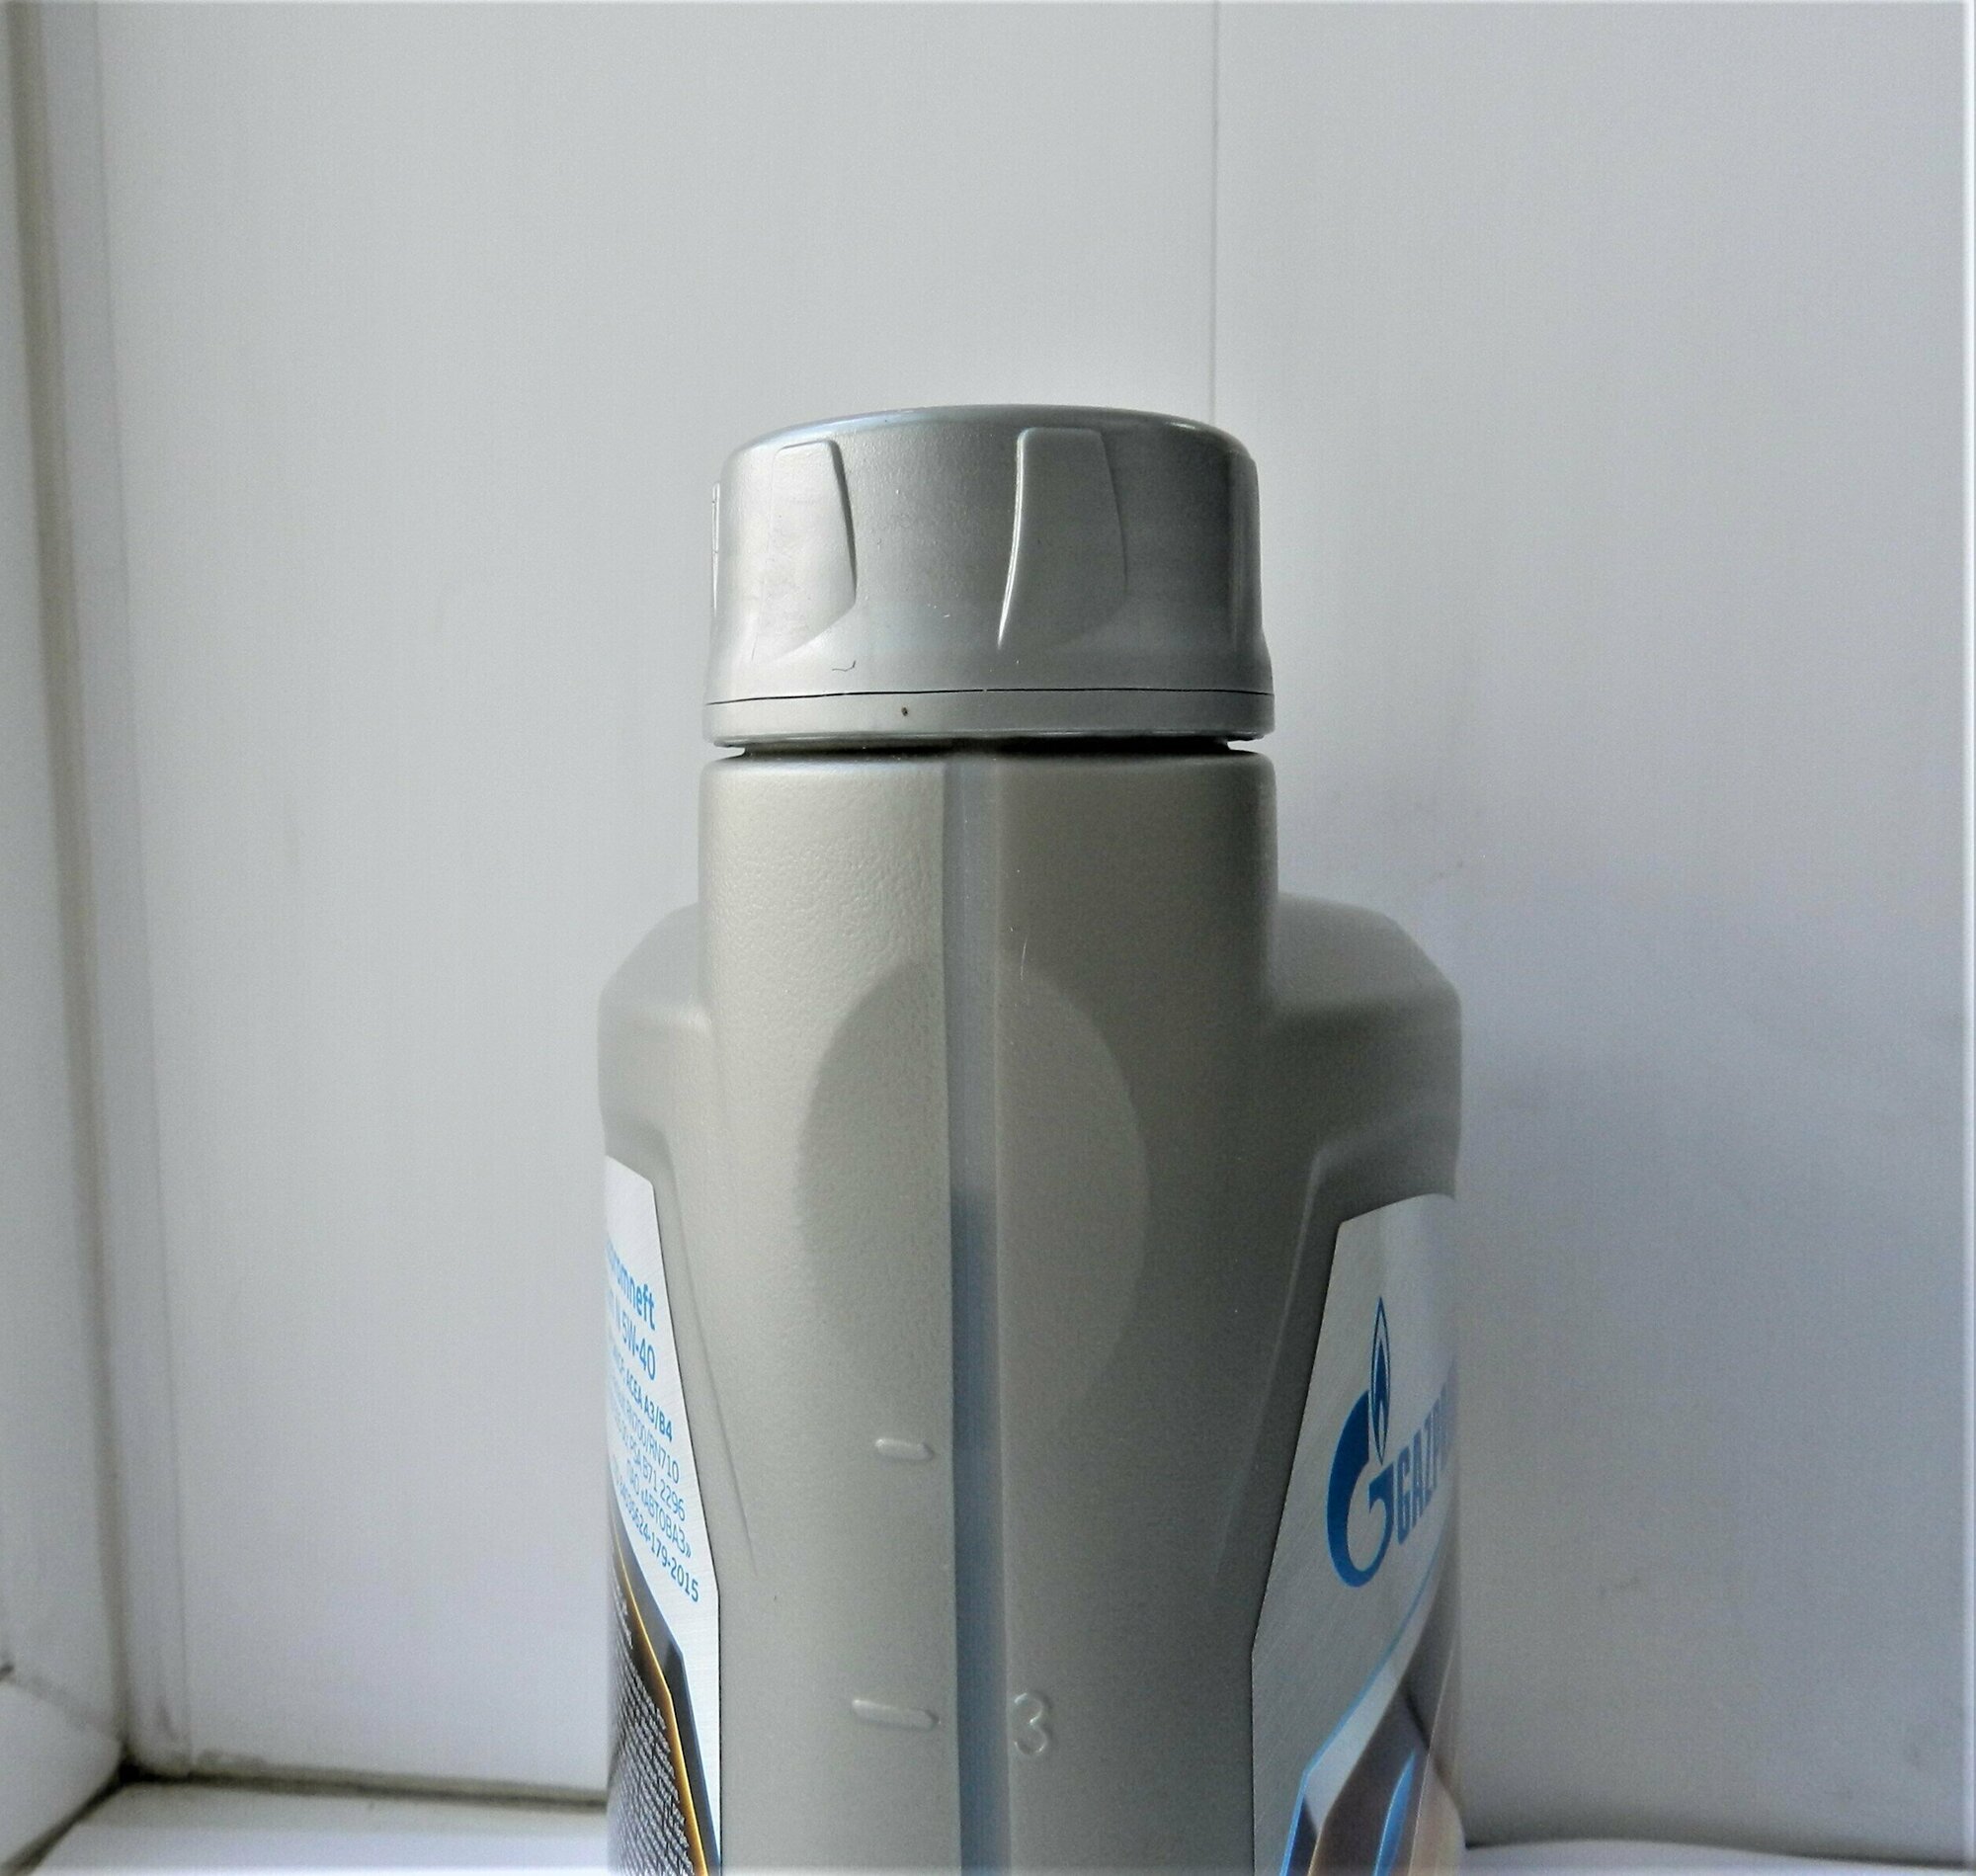 Моторное масло Gazpromneft Газпромнефть Premium N 5W-40 синтетическое 4 л